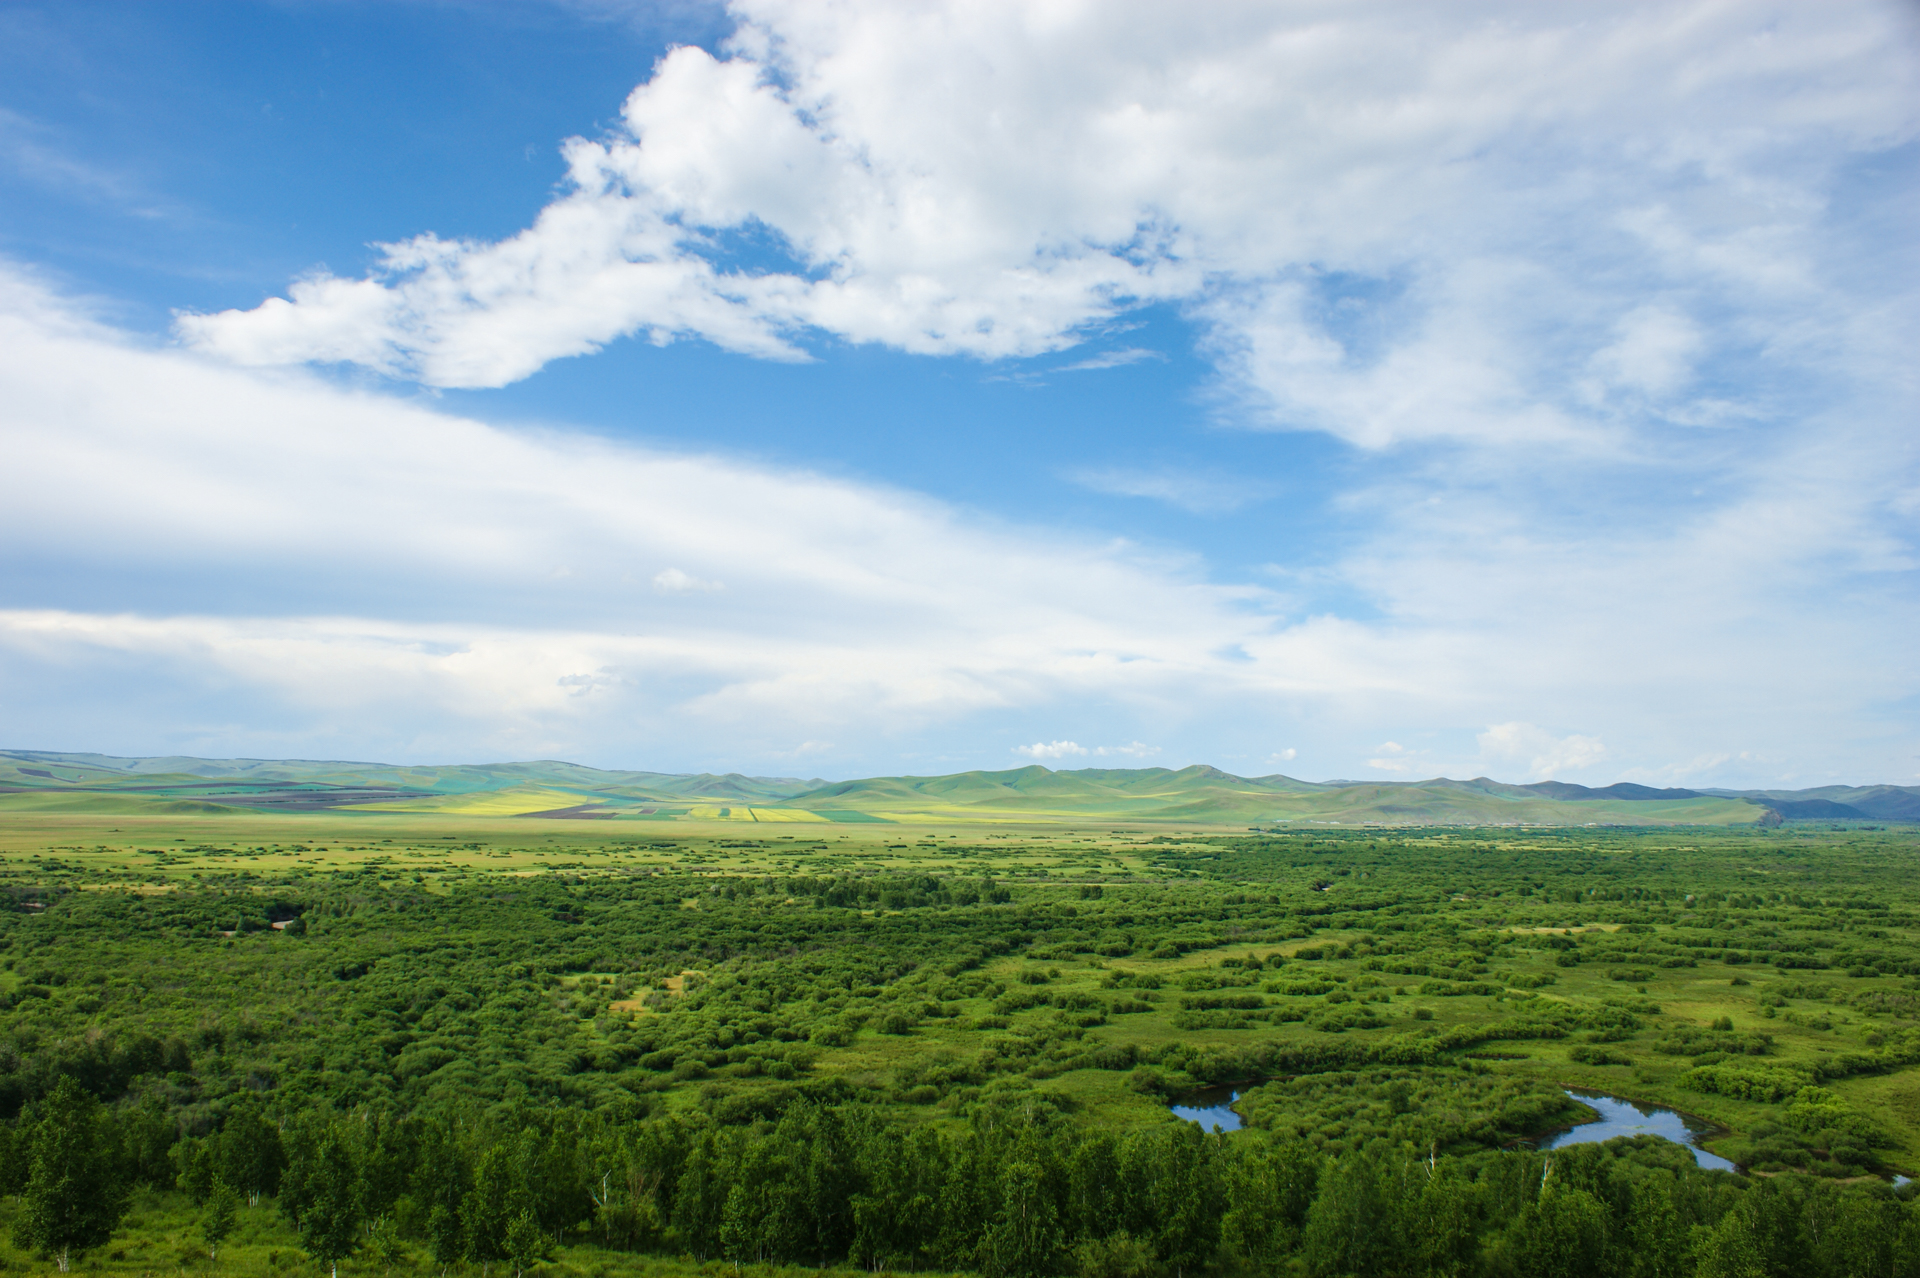 额尔古纳湿地美景-内蒙古旅游-内蒙古新闻网